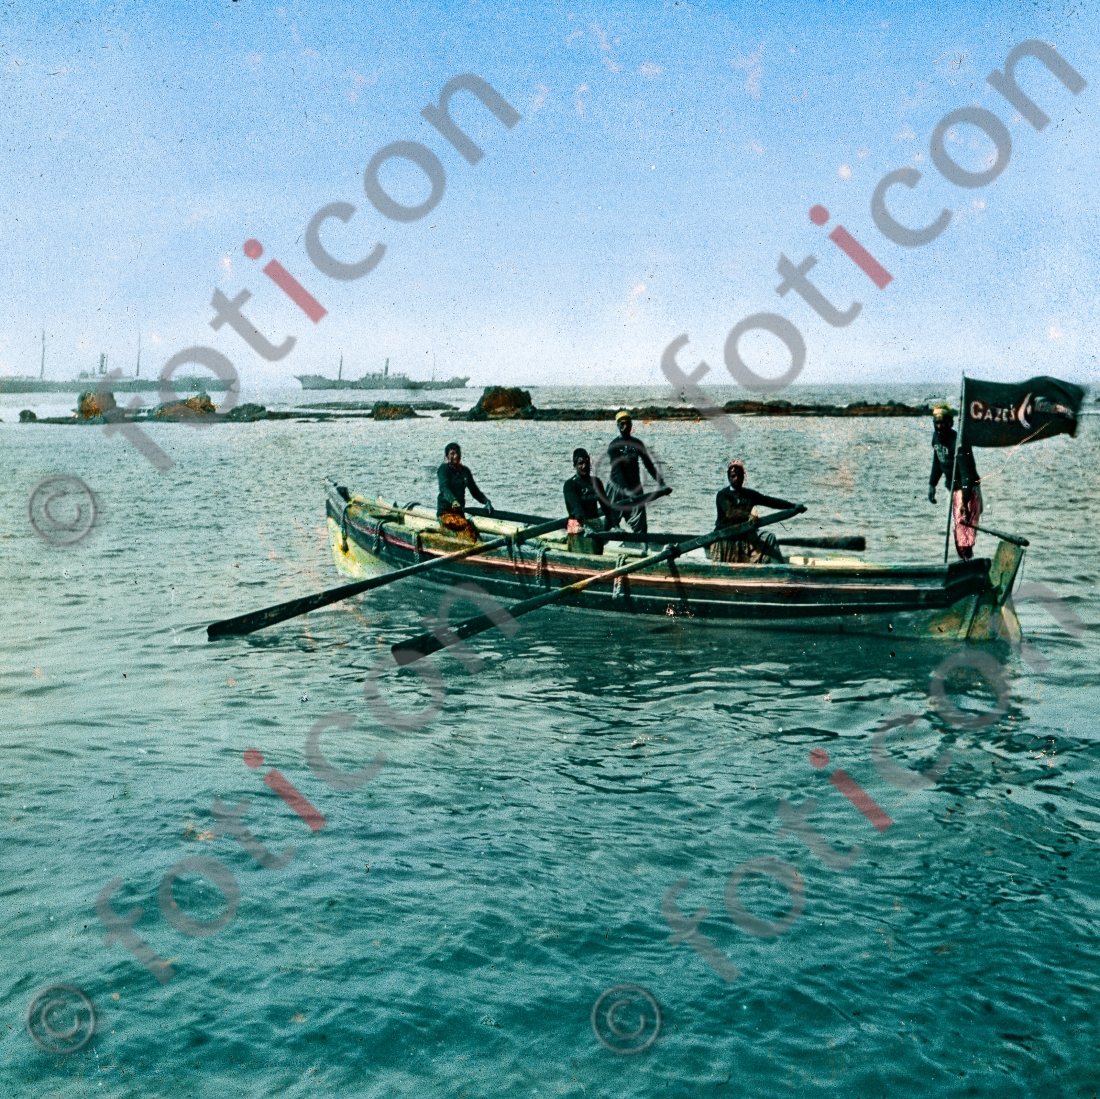 Ein Ruderboot | A rowing boat  - Foto foticon-simon-149a-007.jpg | foticon.de - Bilddatenbank für Motive aus Geschichte und Kultur